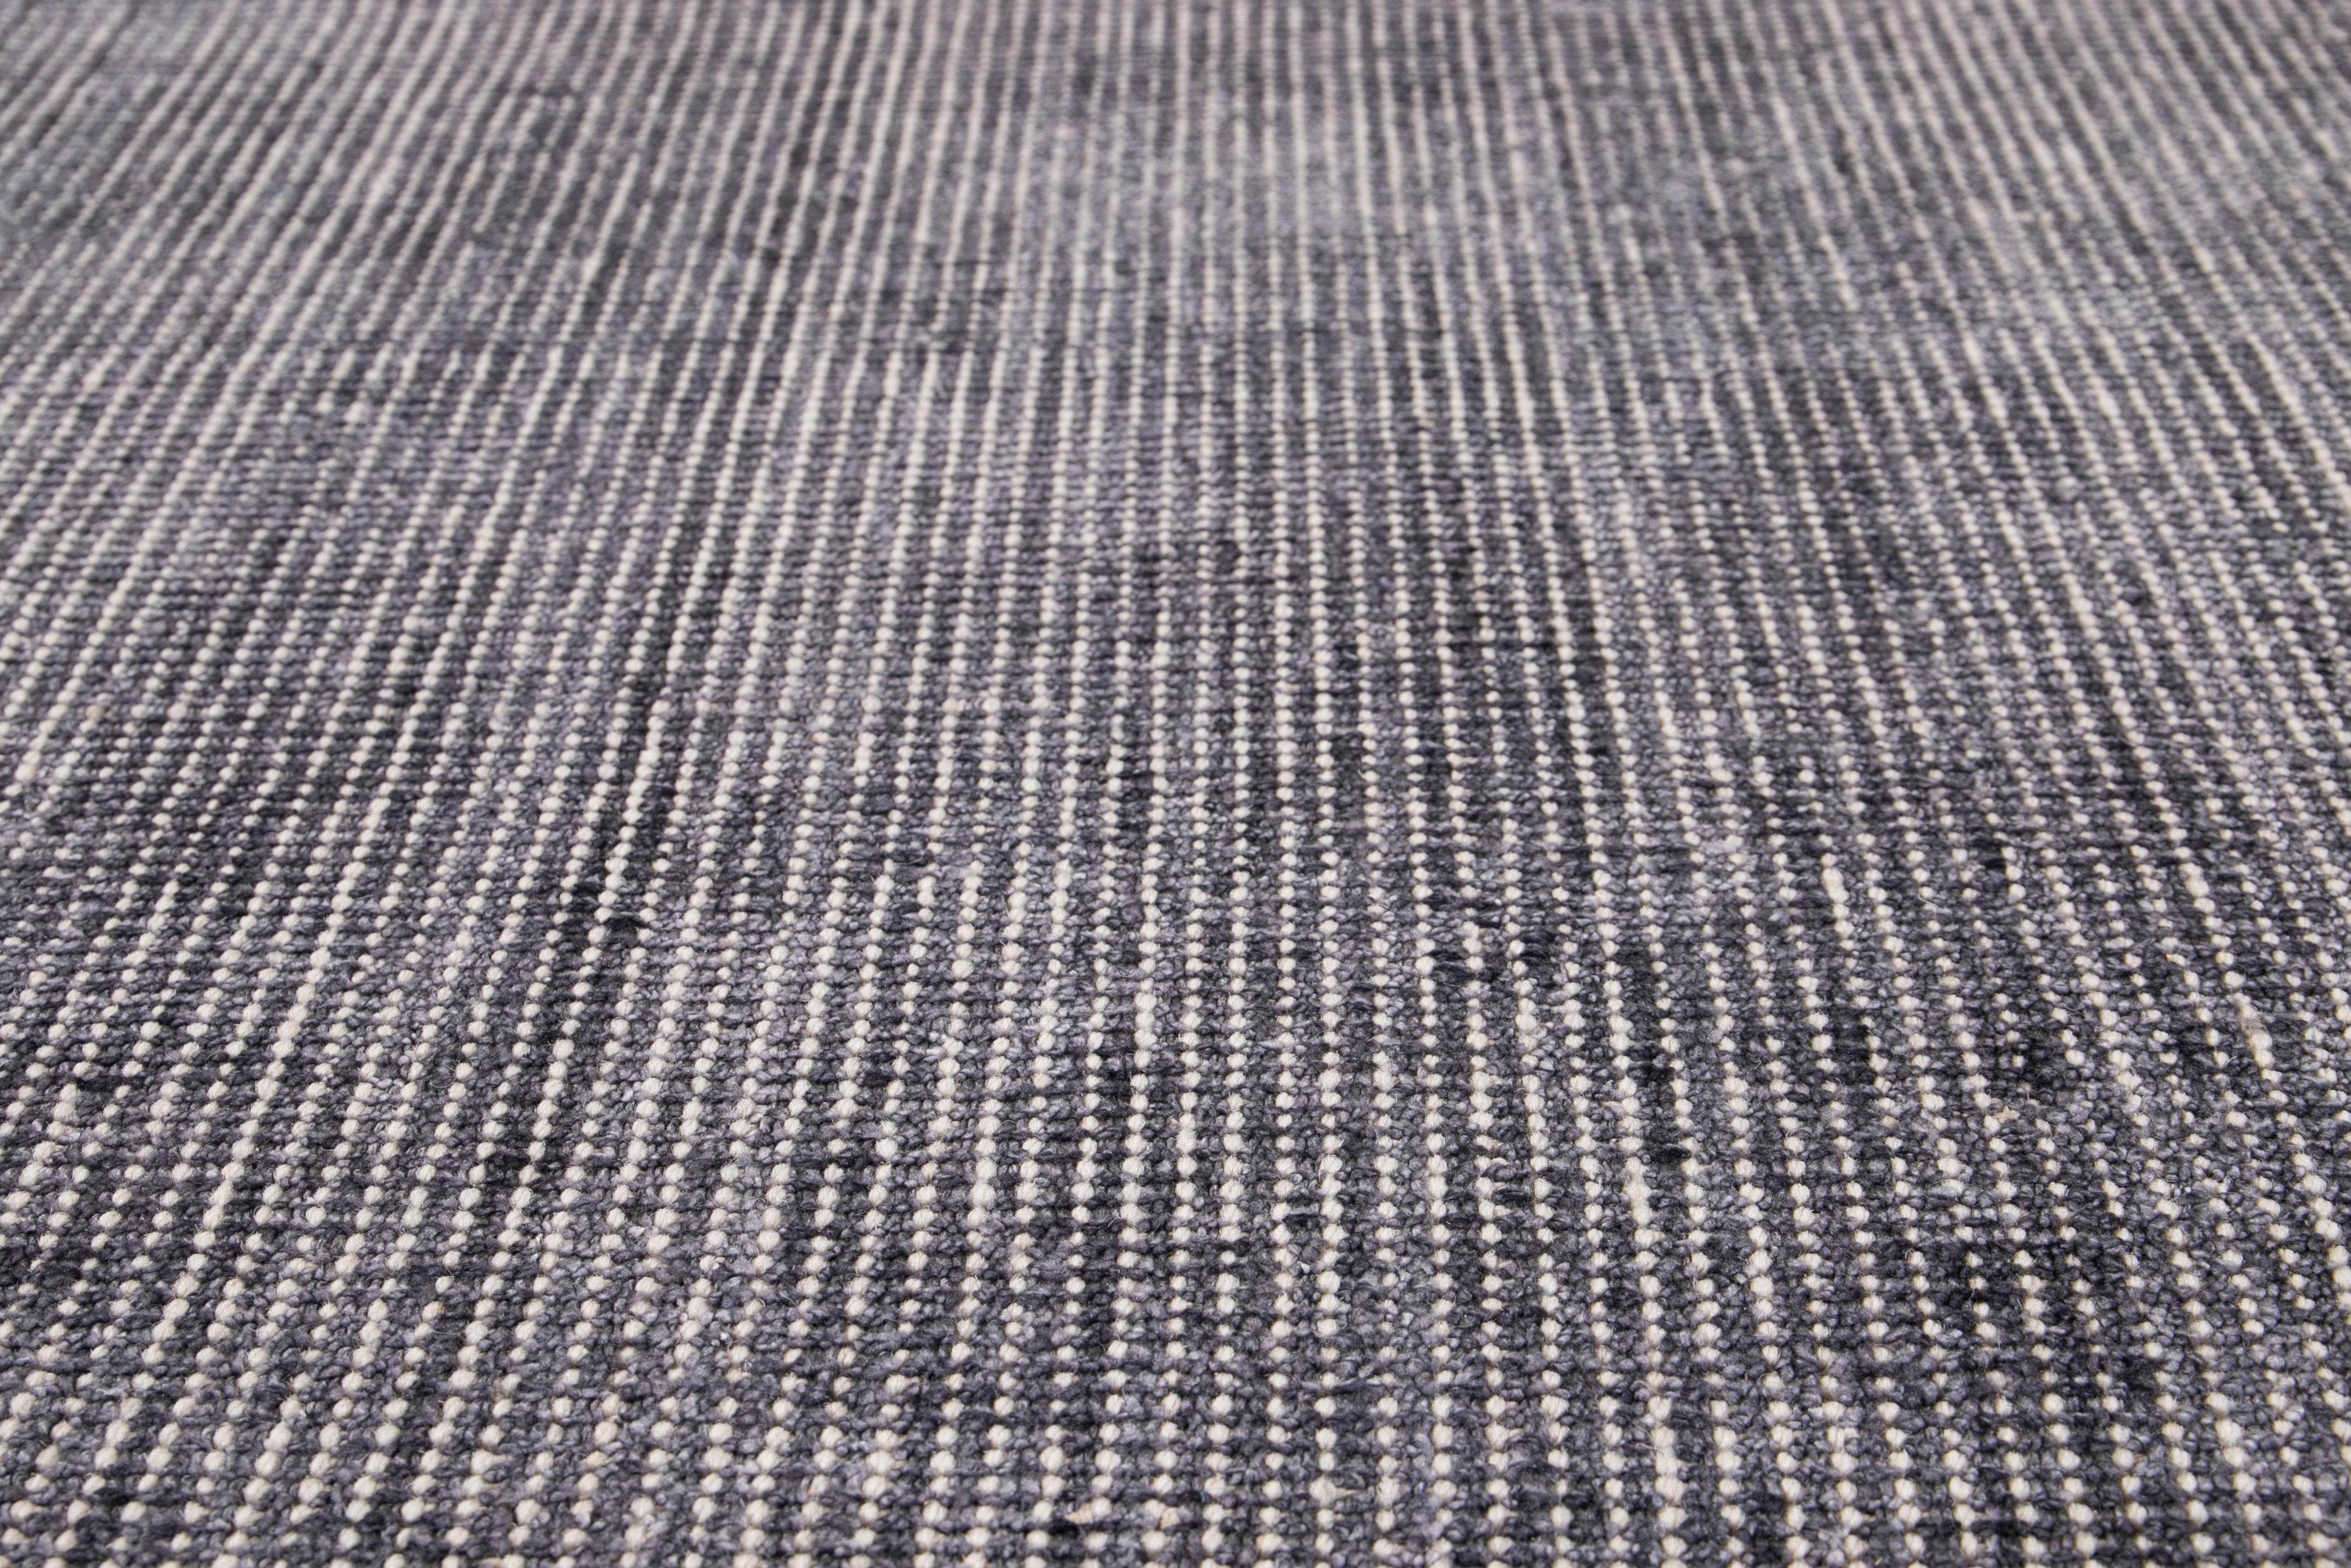 Der wunderschöne handgefertigte Teppich Apadana aus Indien besteht aus einer Kombination von Bambus-, Seiden- und Wollmaterialien mit einem wunderschönen grauen Feld und einer blaugrünen Bordüre. Dieser Teppich gehört zur Groove Collection und